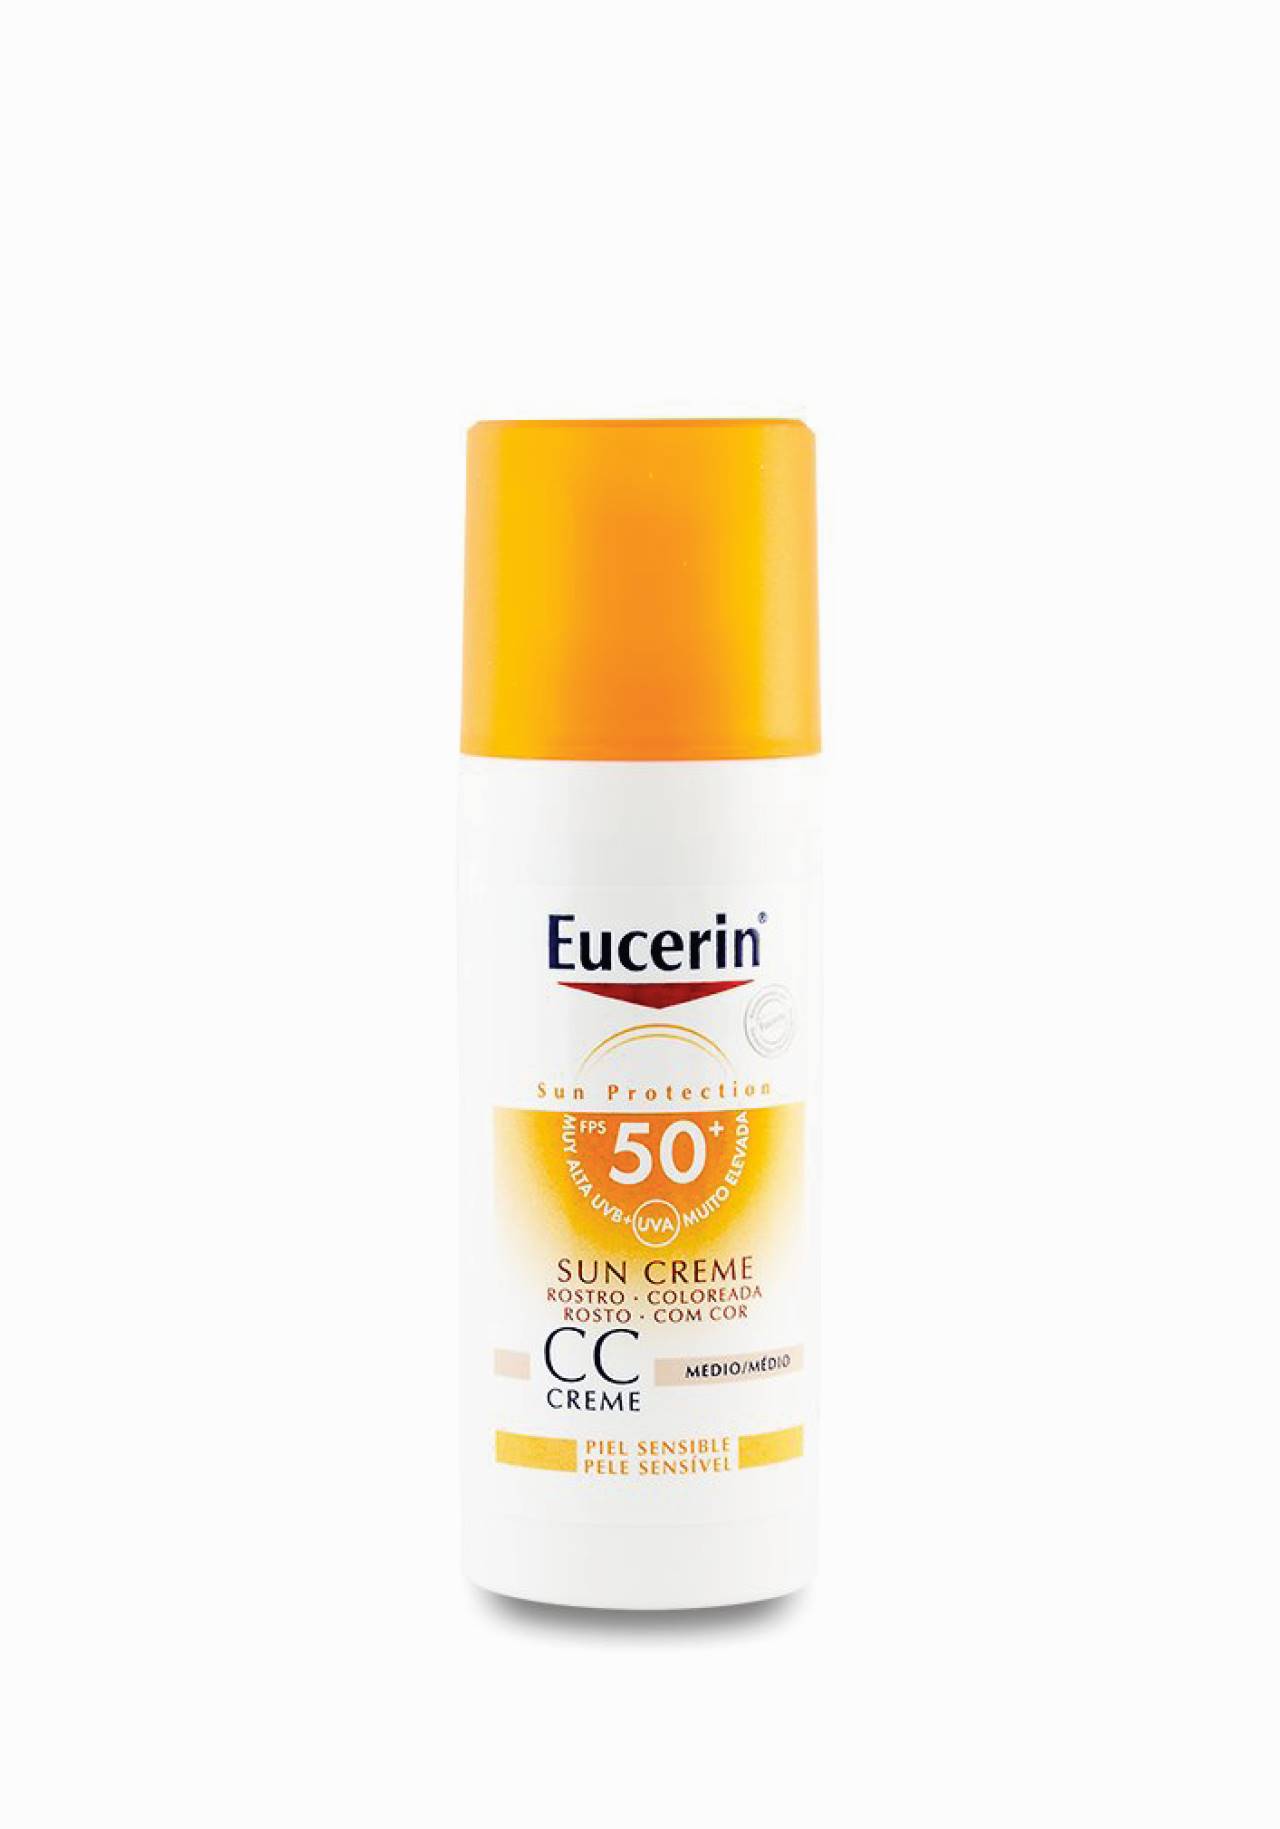 Eucerin crema  de sol coloreada para rostro FPS 50+ Piel sensible Las mejores cremas con color de farmacia por menos de 15€